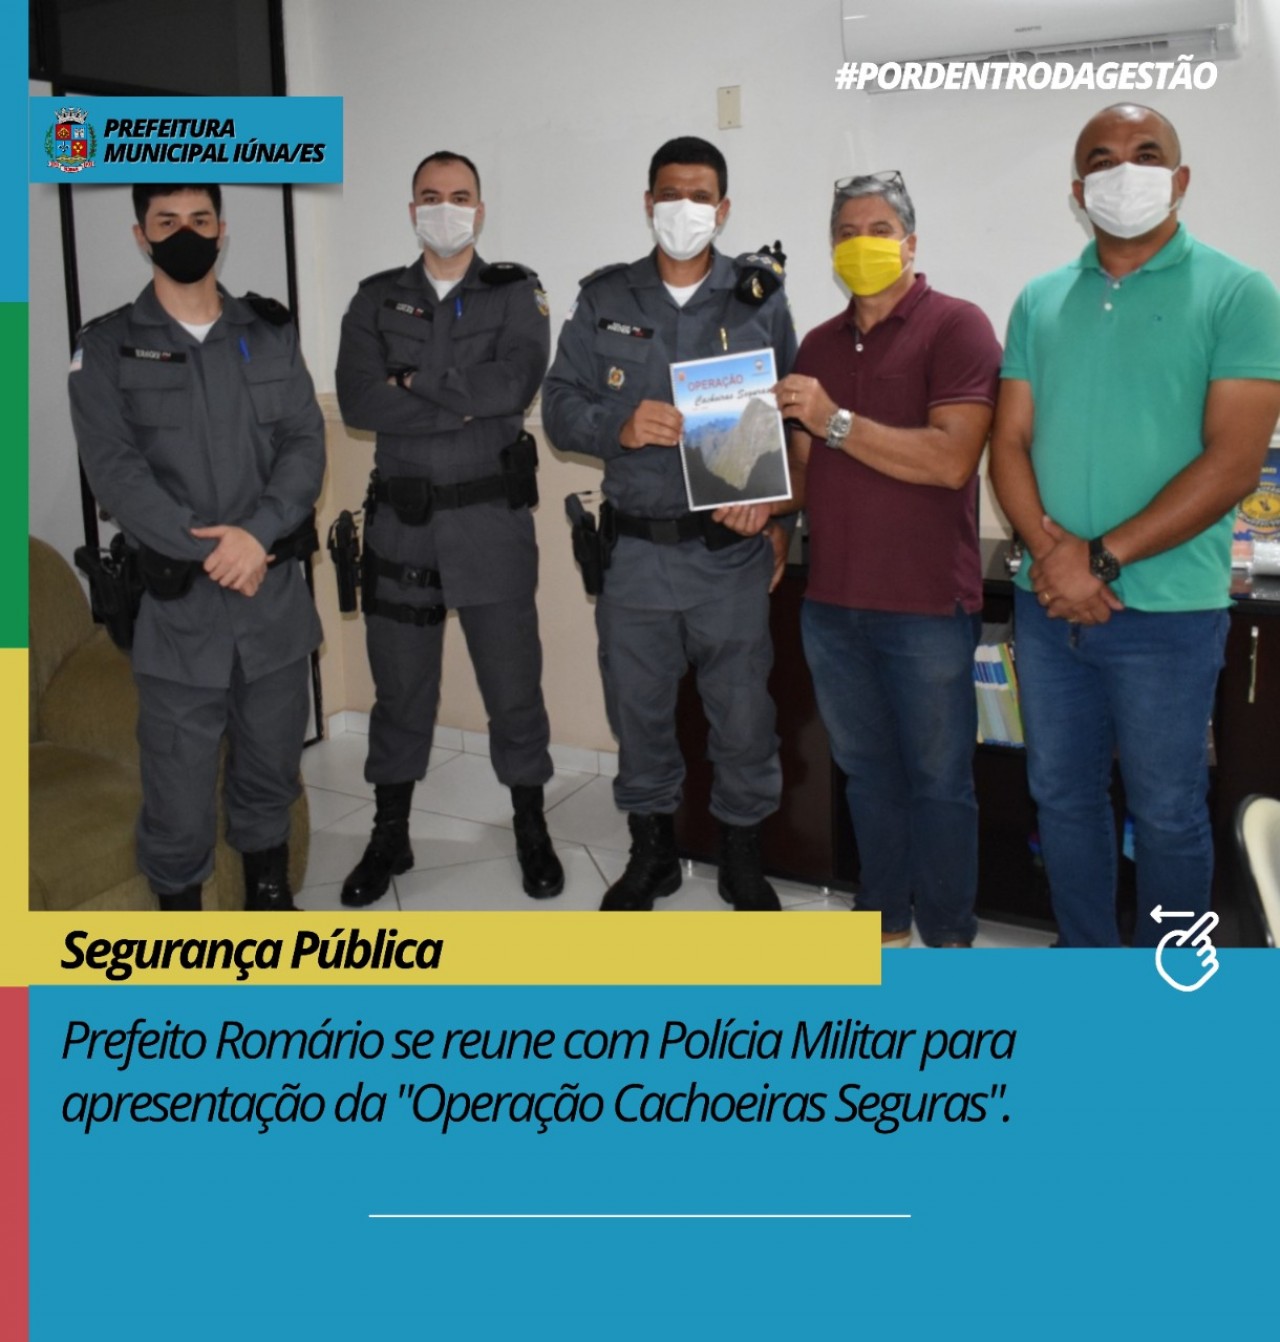 Prefeito Romário se reúne com Polícia Militar para apresentação da "Operação Cachoeiras Seguras"